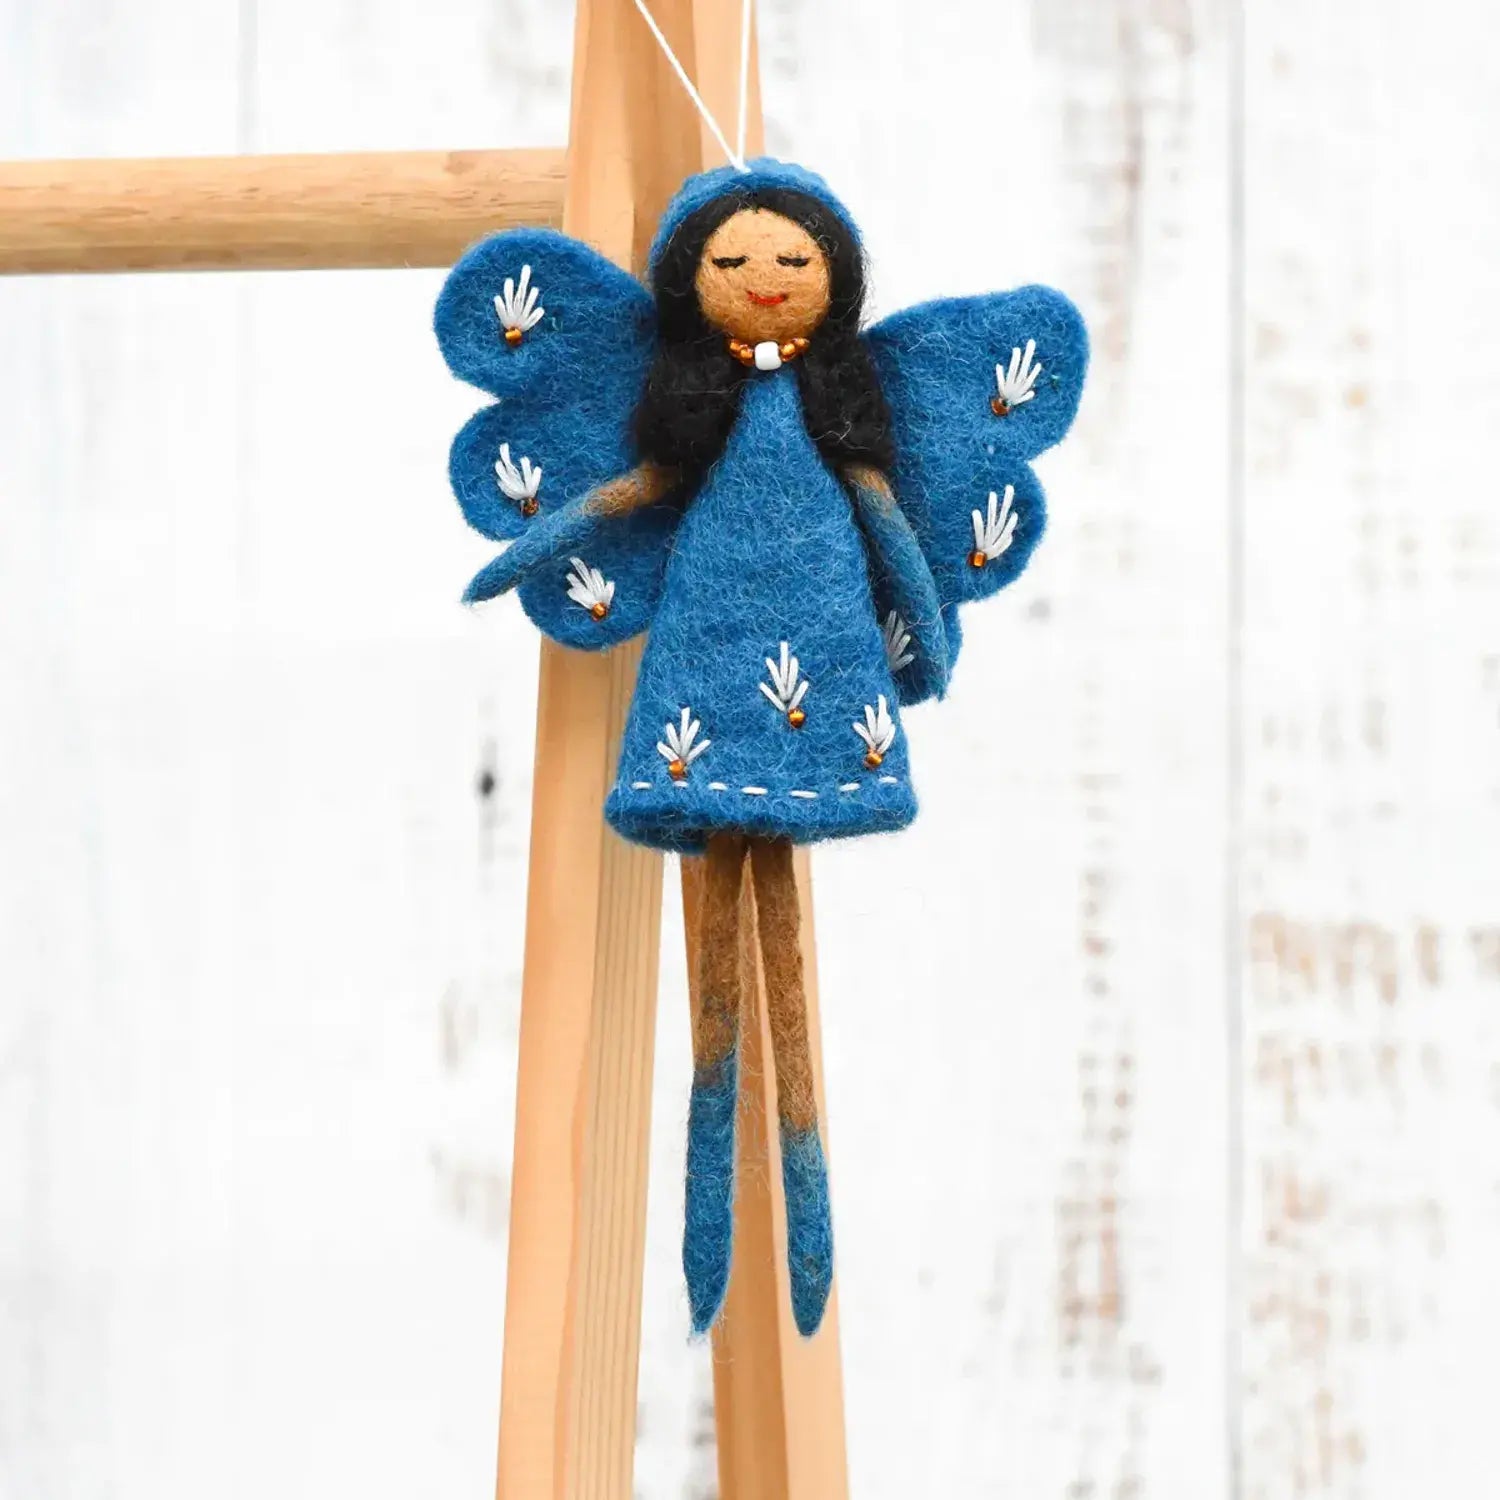 Felt Angel Fairy by Tara Treasures with Cobalt Blue Dress